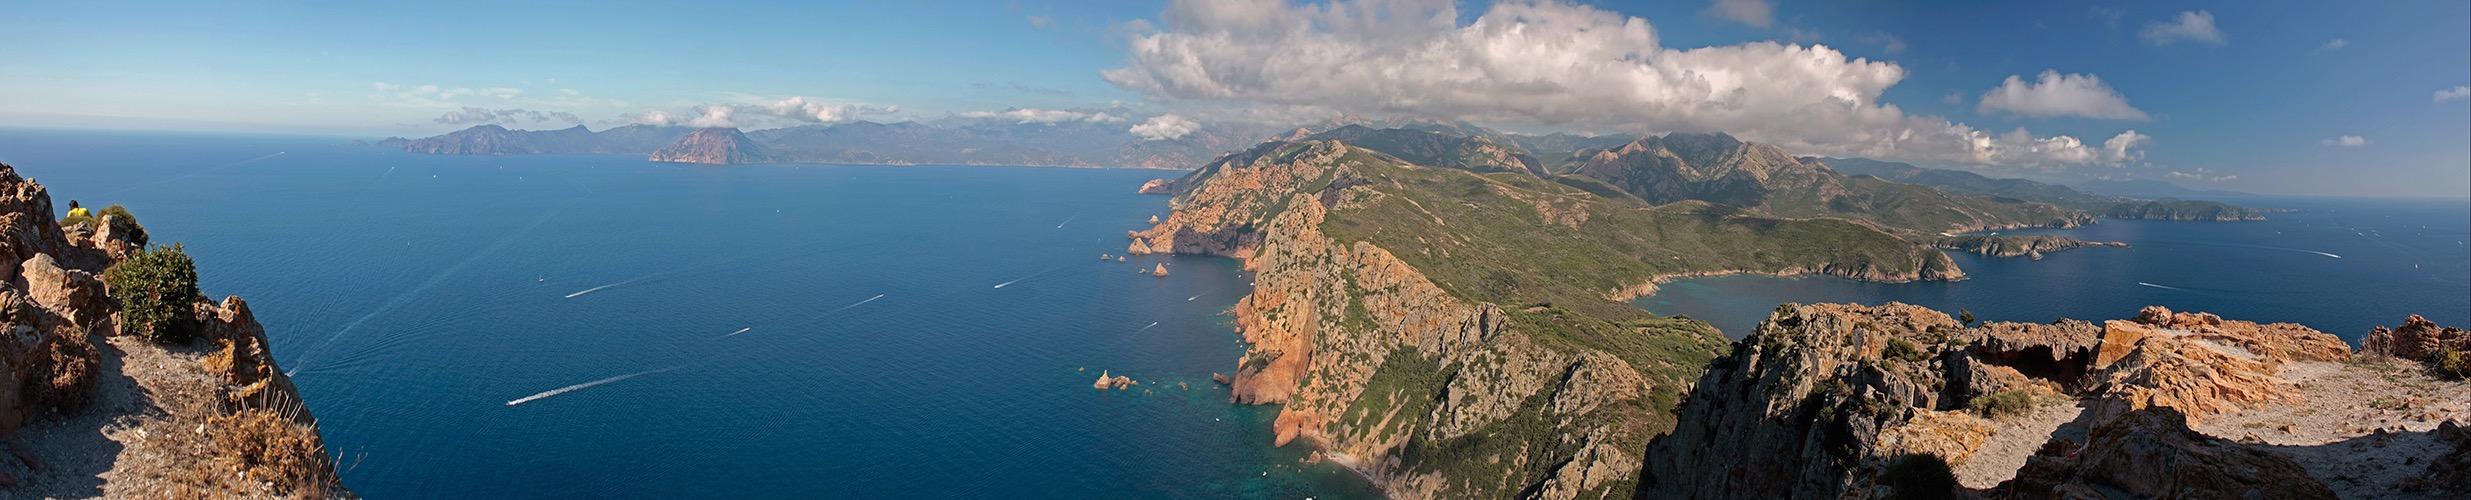 Korsika2014_2.jpg